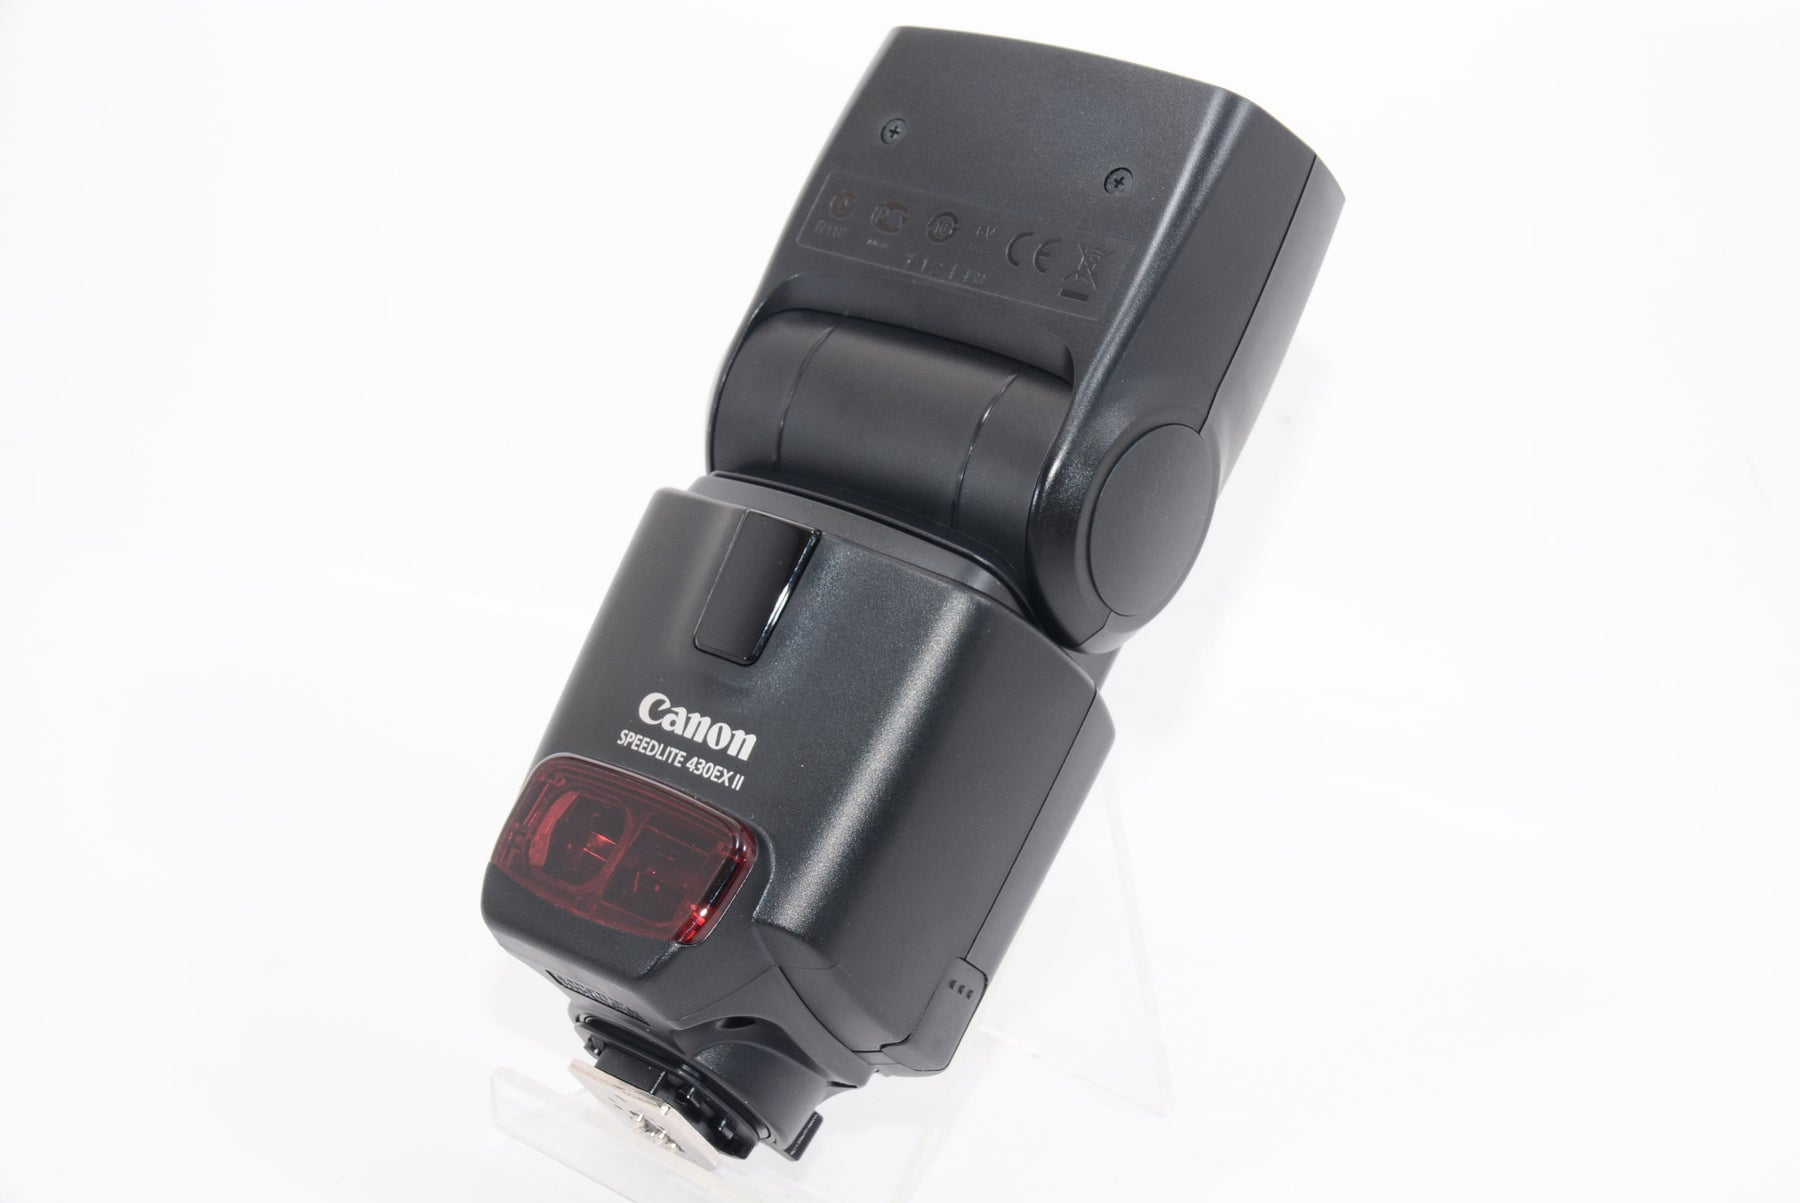 Canon スピードライト 430ex Ⅱ ストロボ-